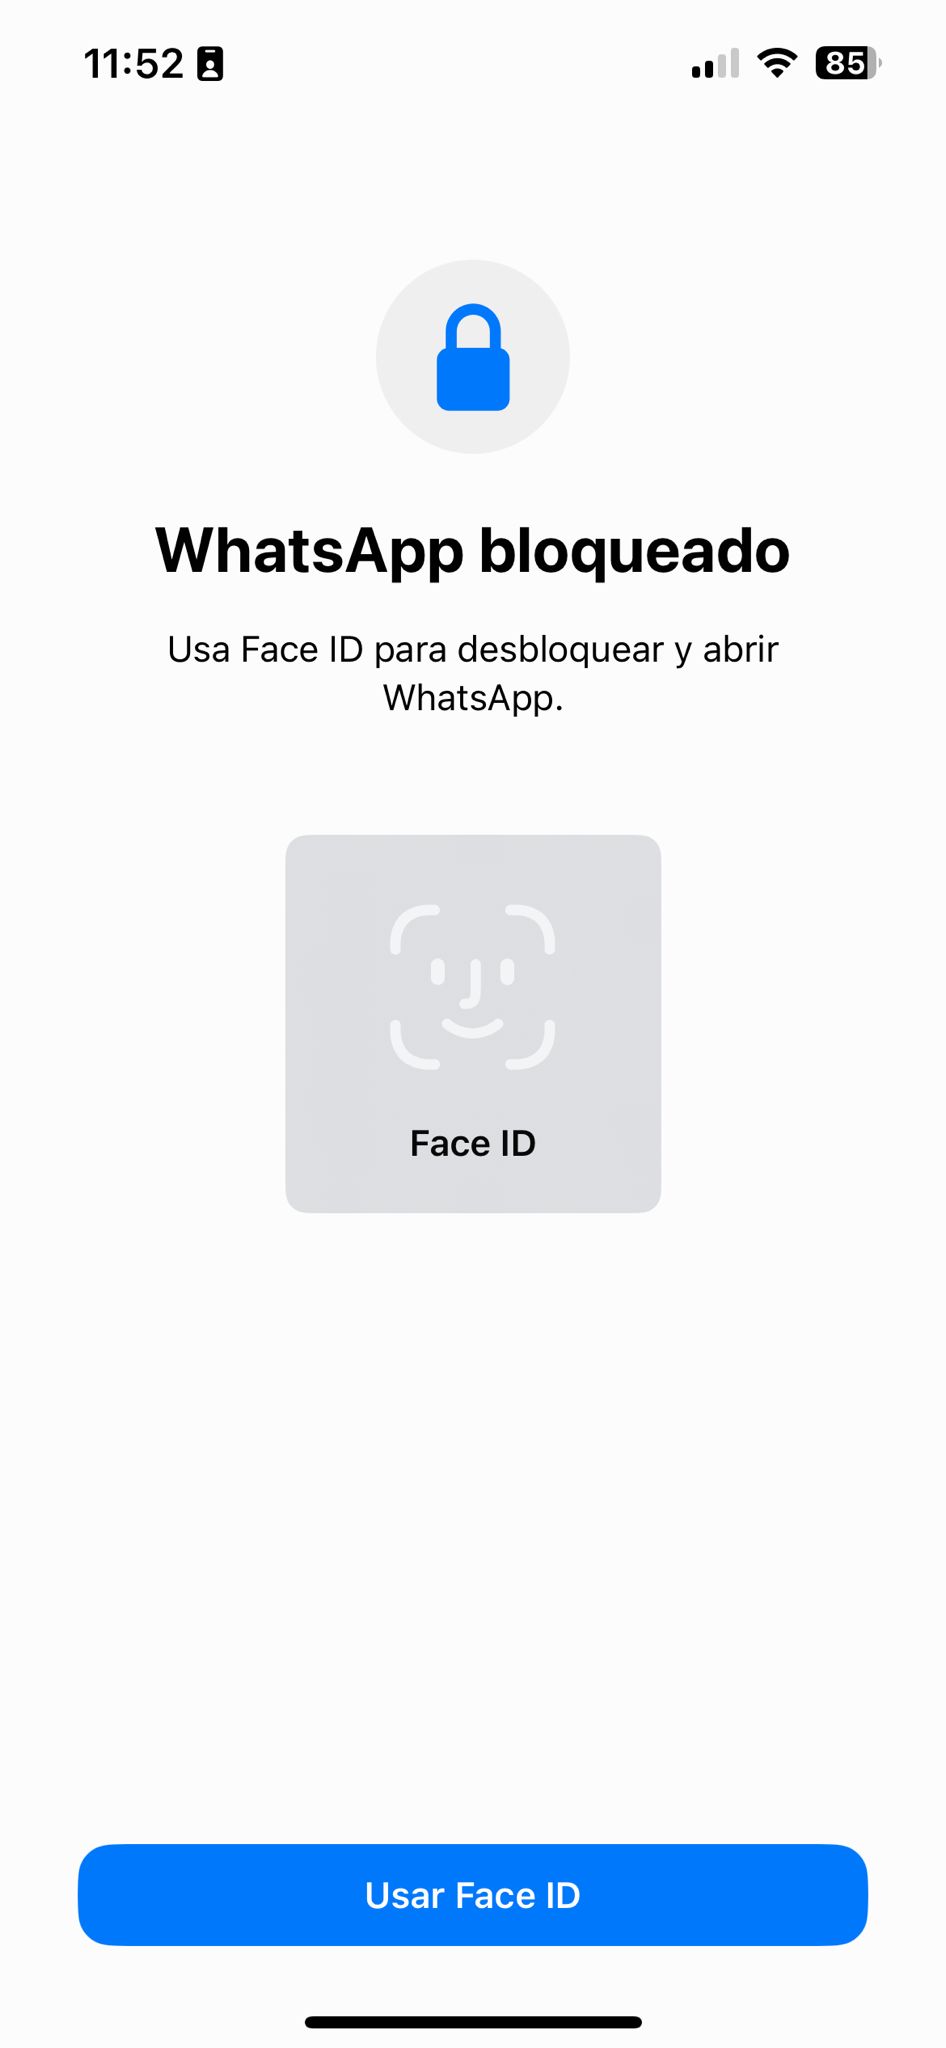 Bloqueo WhatsApp FaceID